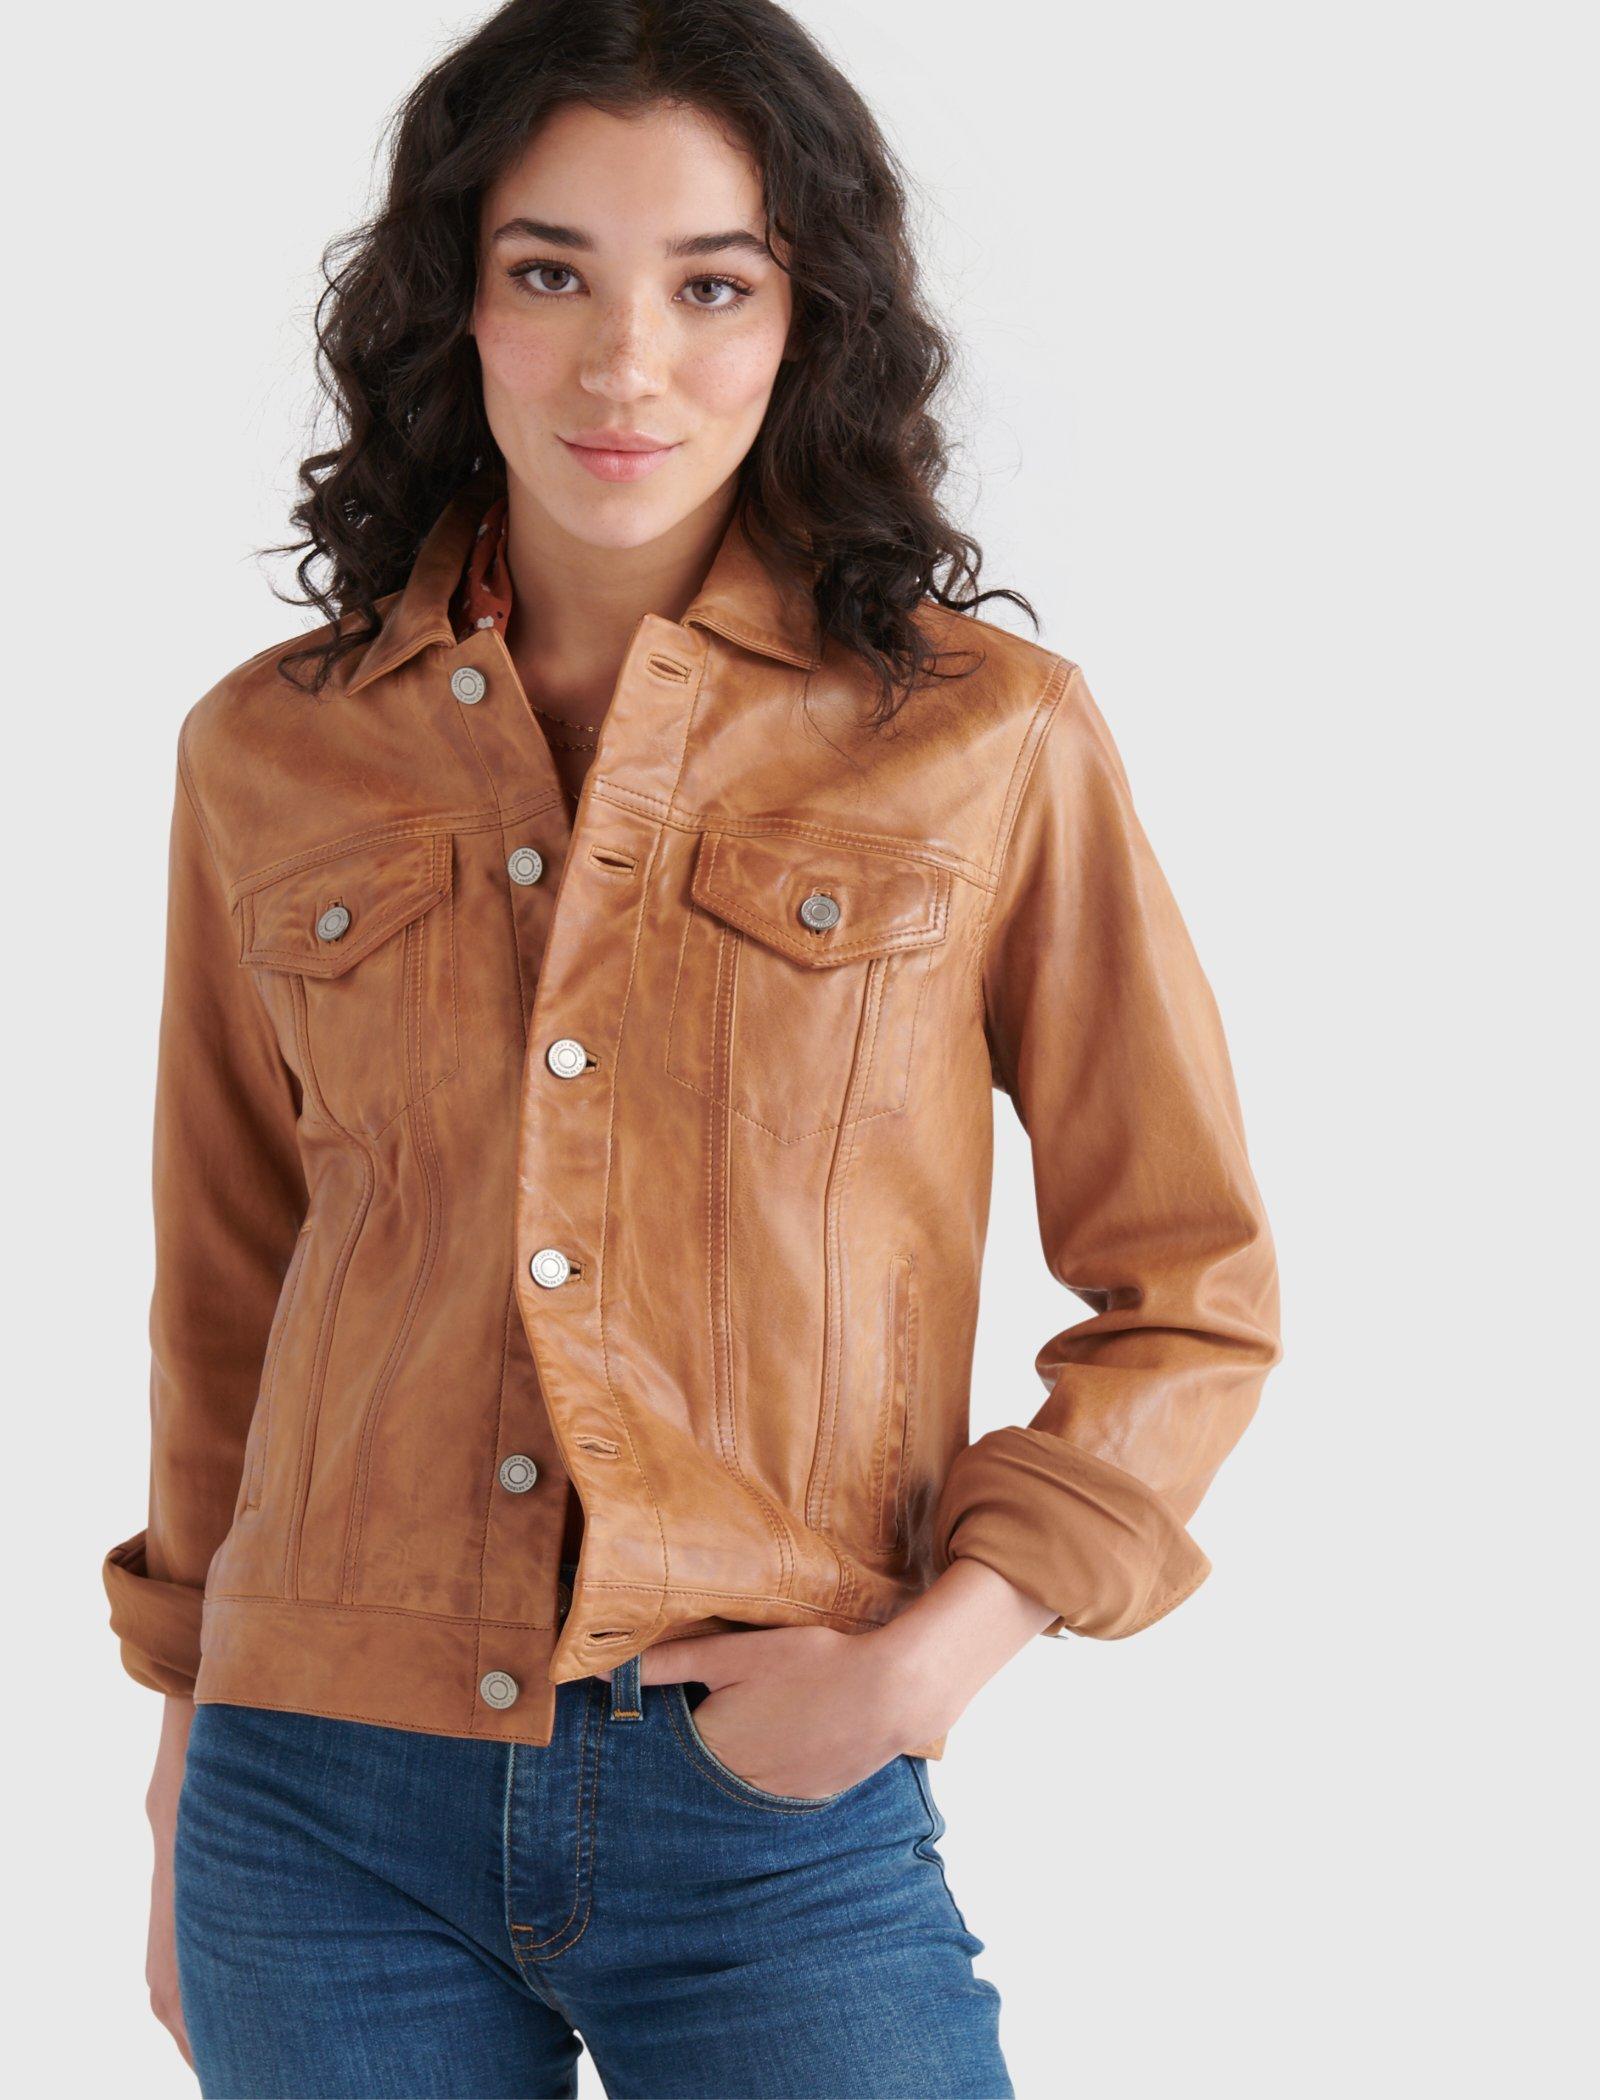 leather trucker jacket women